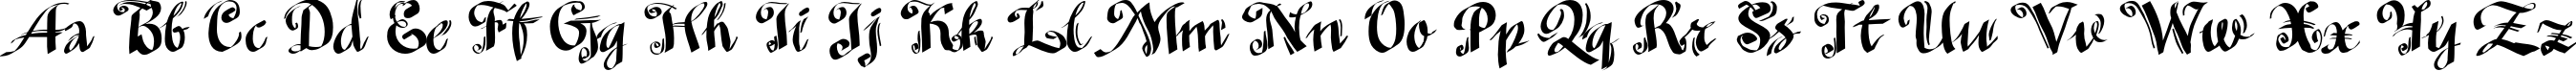 Пример написания английского алфавита шрифтом MinusmanC